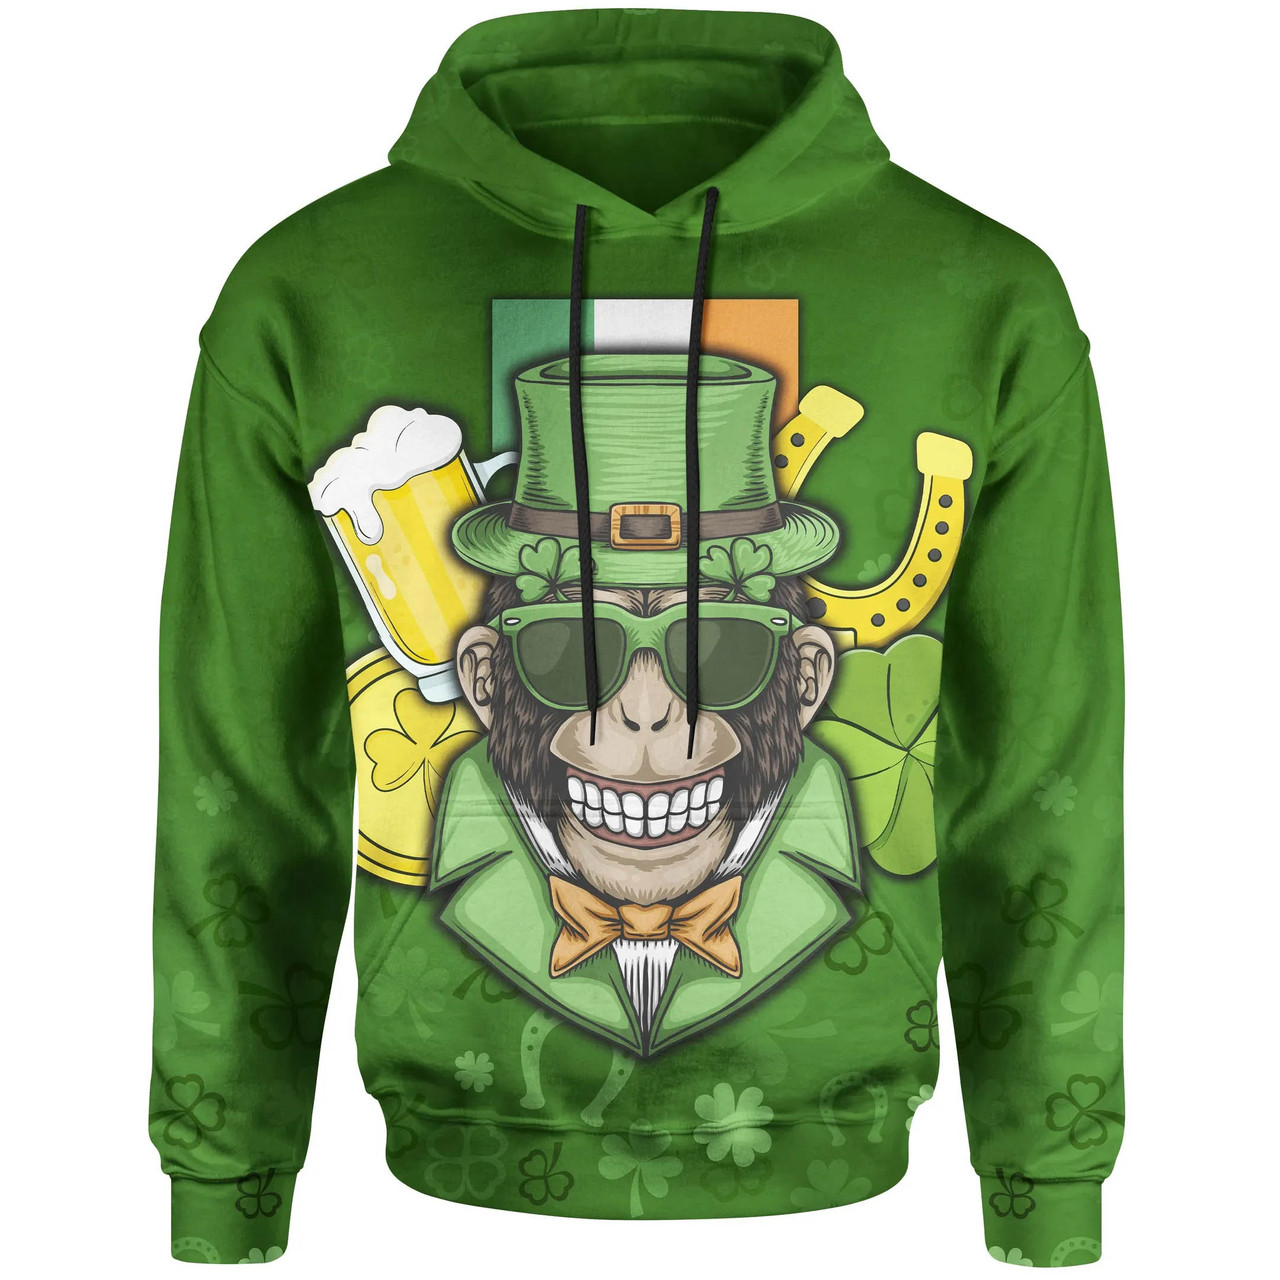 Leprechaun Irish hoodie